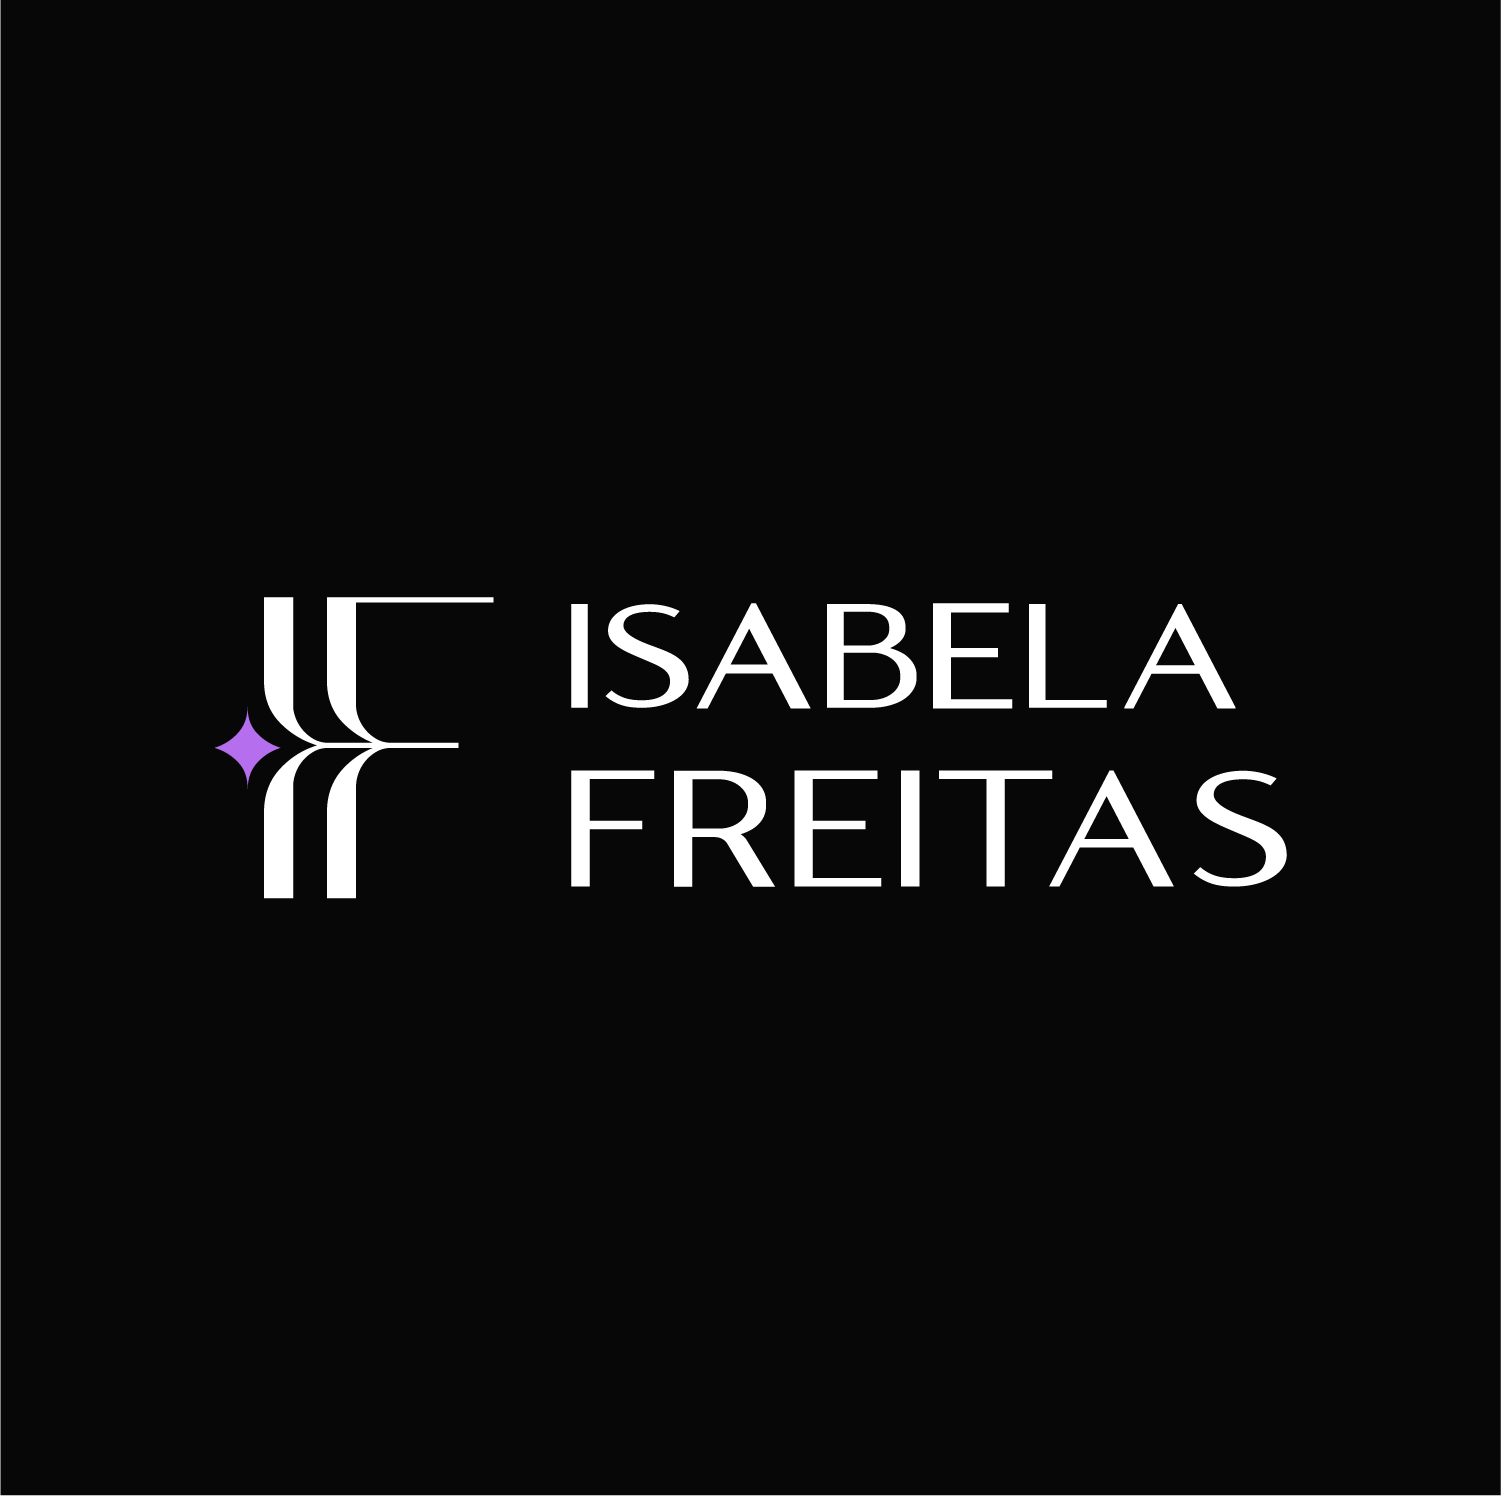 Isabela Freitas